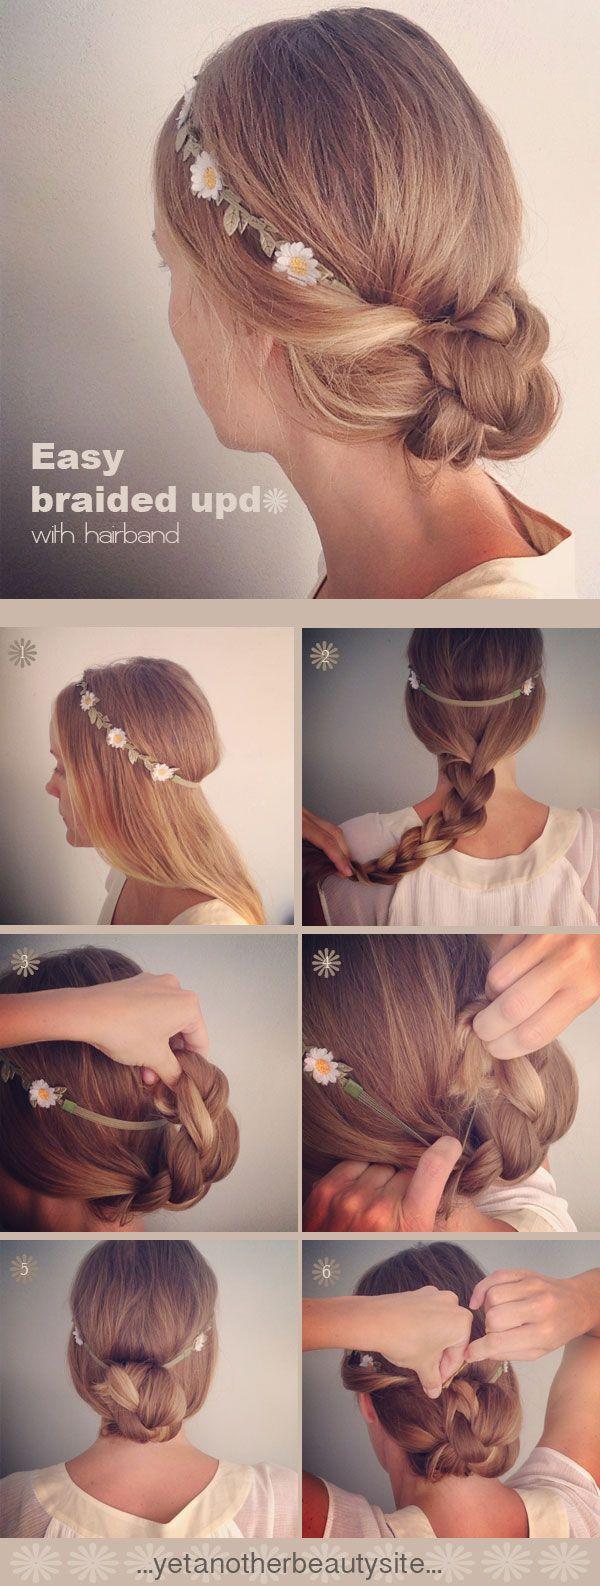 زفاف - 20 DIY Wedding Hairstyles With Tutorials To Try On Your Own